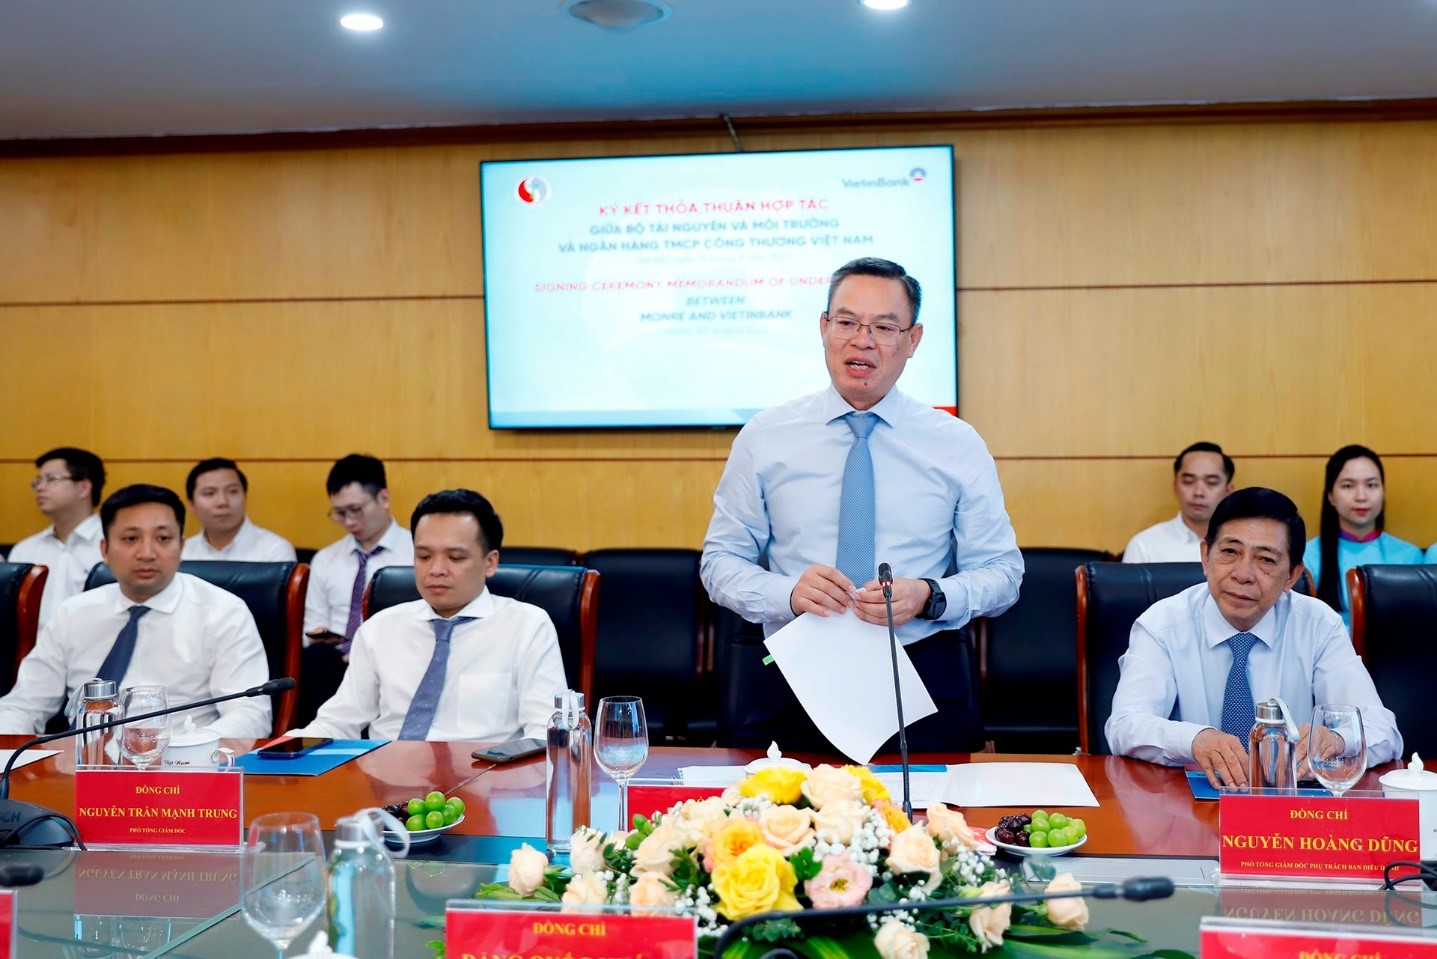 Chủ tịch Hội đồng quản trị VietinBank Trần Minh Bình phát biểu.  